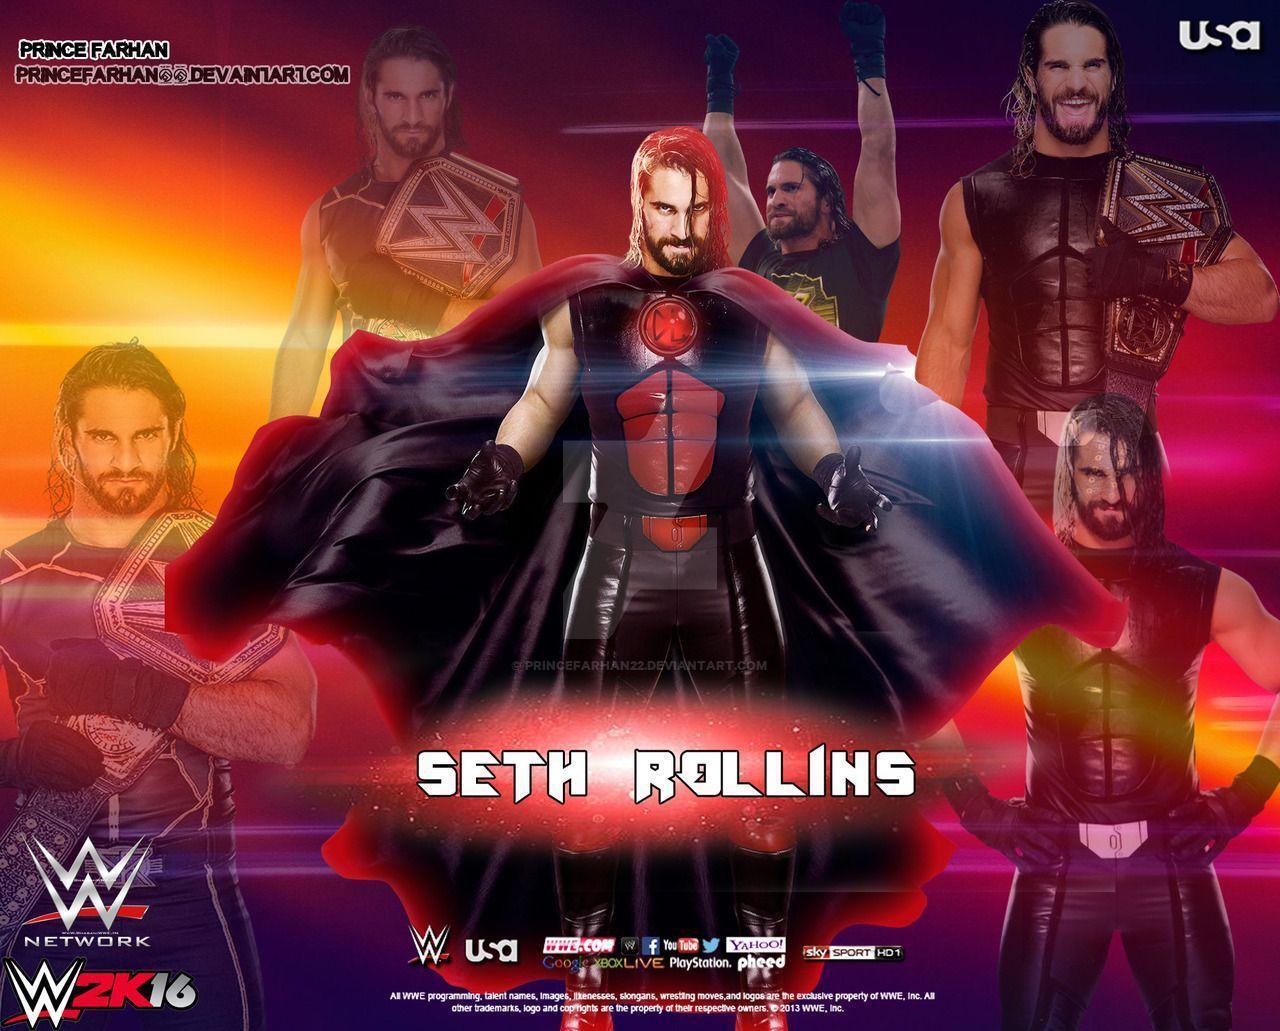 Wwe Seth Rollins Wallpaper By Prince Farhan